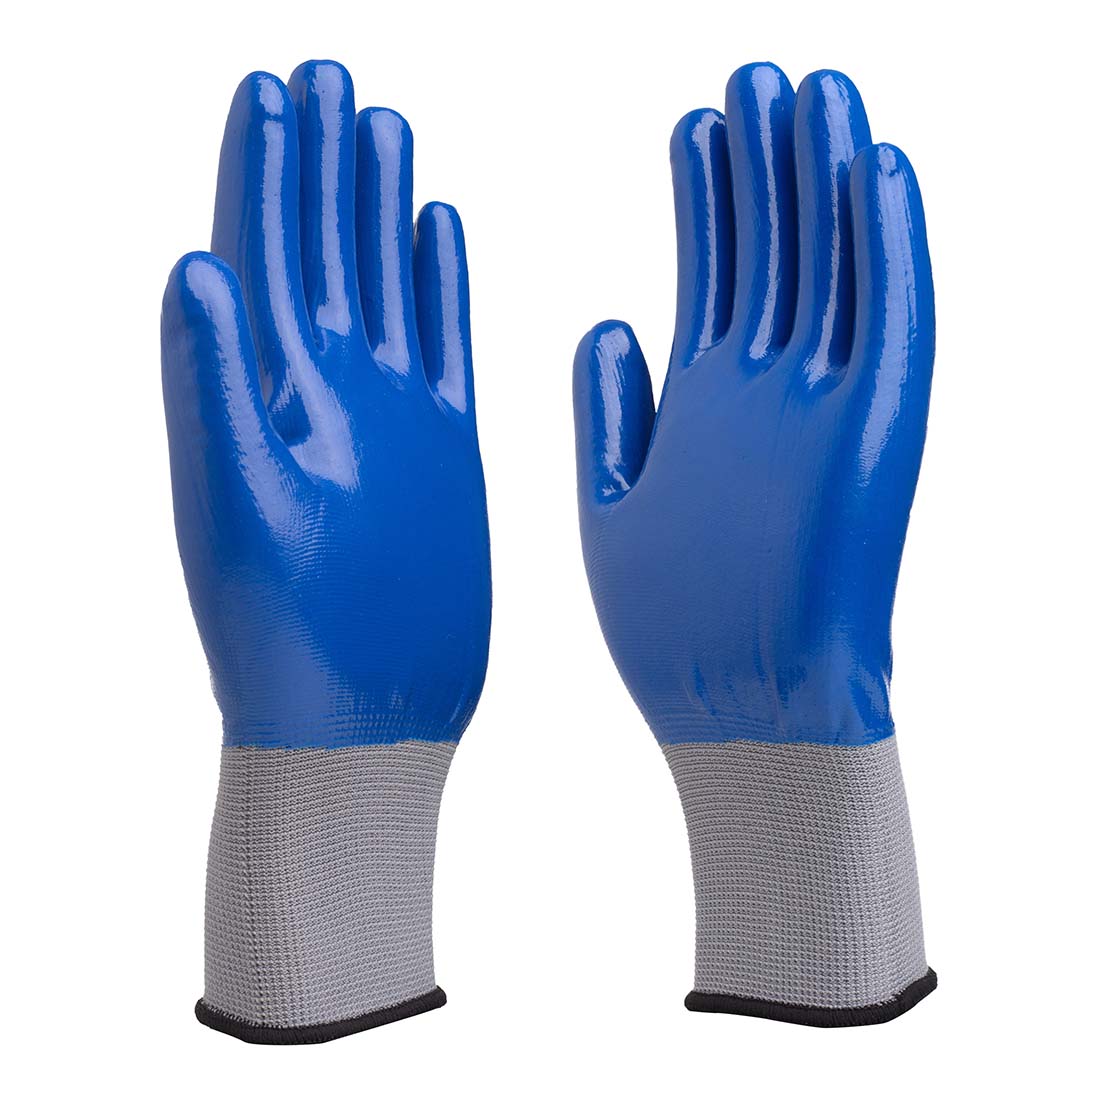 Blue Work Gloves,Ninja Work Gloves,Fleece Lined Work Gloves